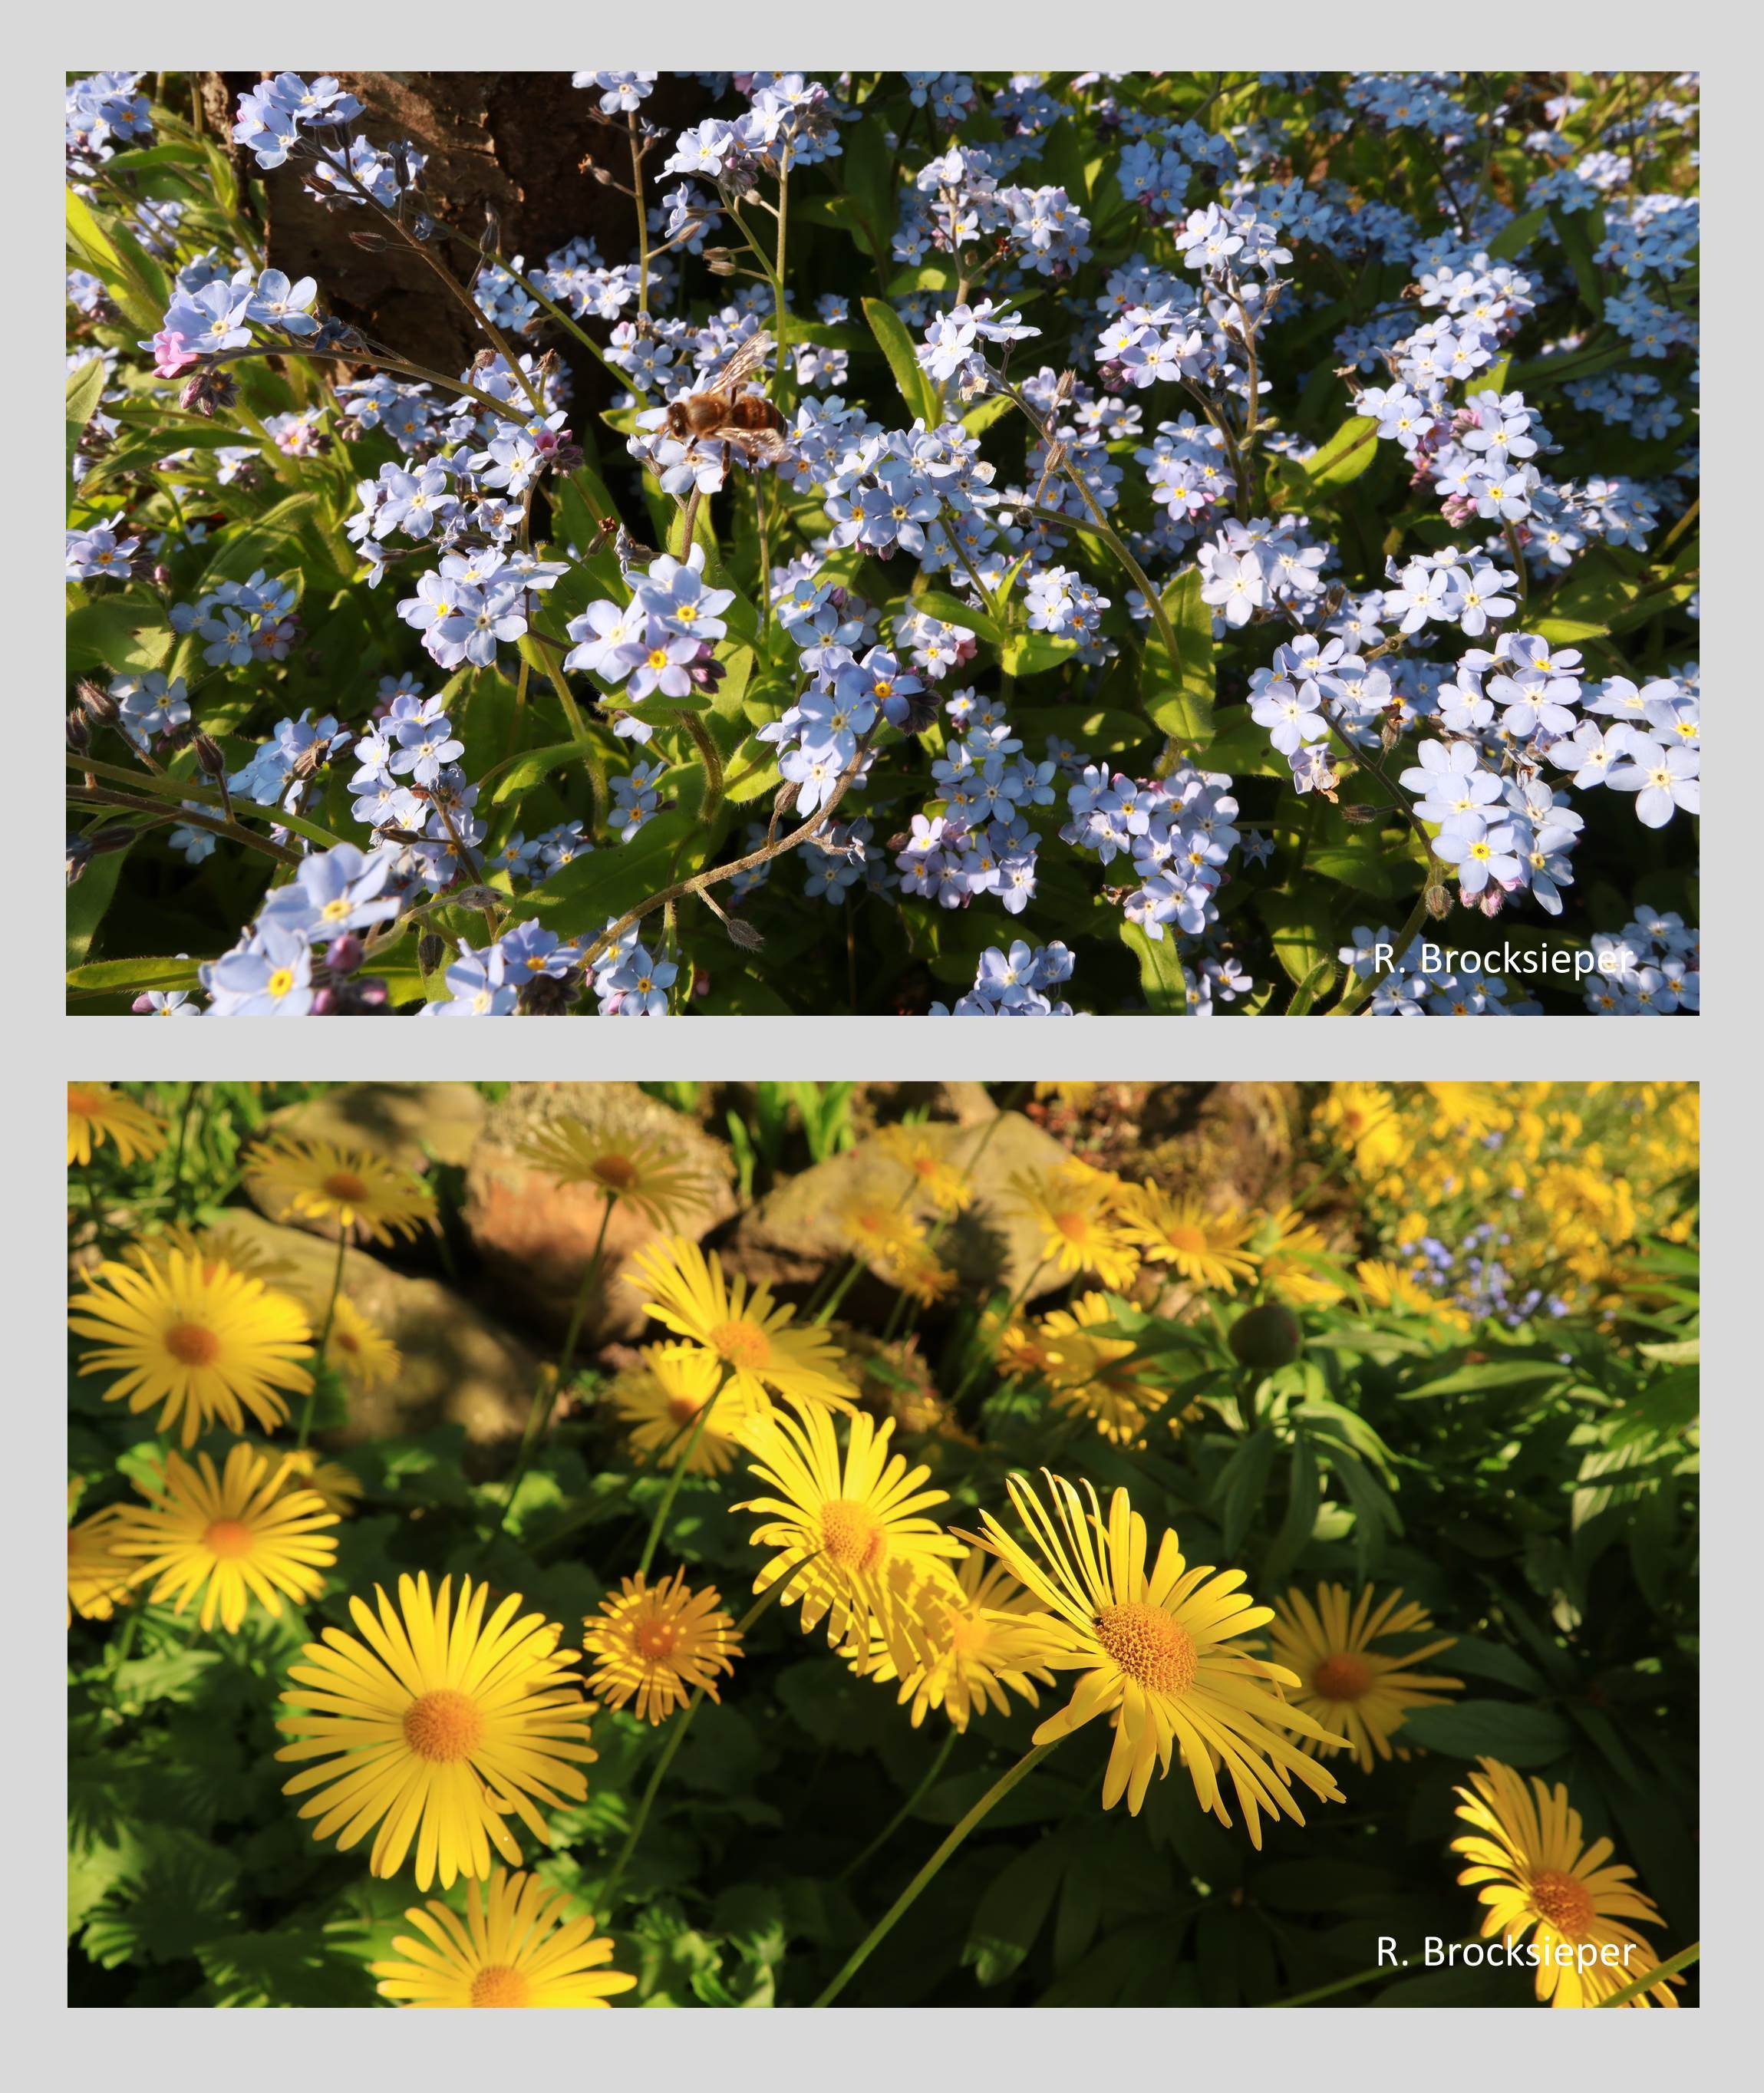 Gämswurz (Doronicum spec.) und Vergissmeinnicht (Myosotis spec.) blühen zur gleichen Zeit und tauchen den Garten im Frühling in ein gelb-blaues Blütenmeer. Von Bienen, besonders auch Wildbienen, werden beide Pflanzen beflogen. 